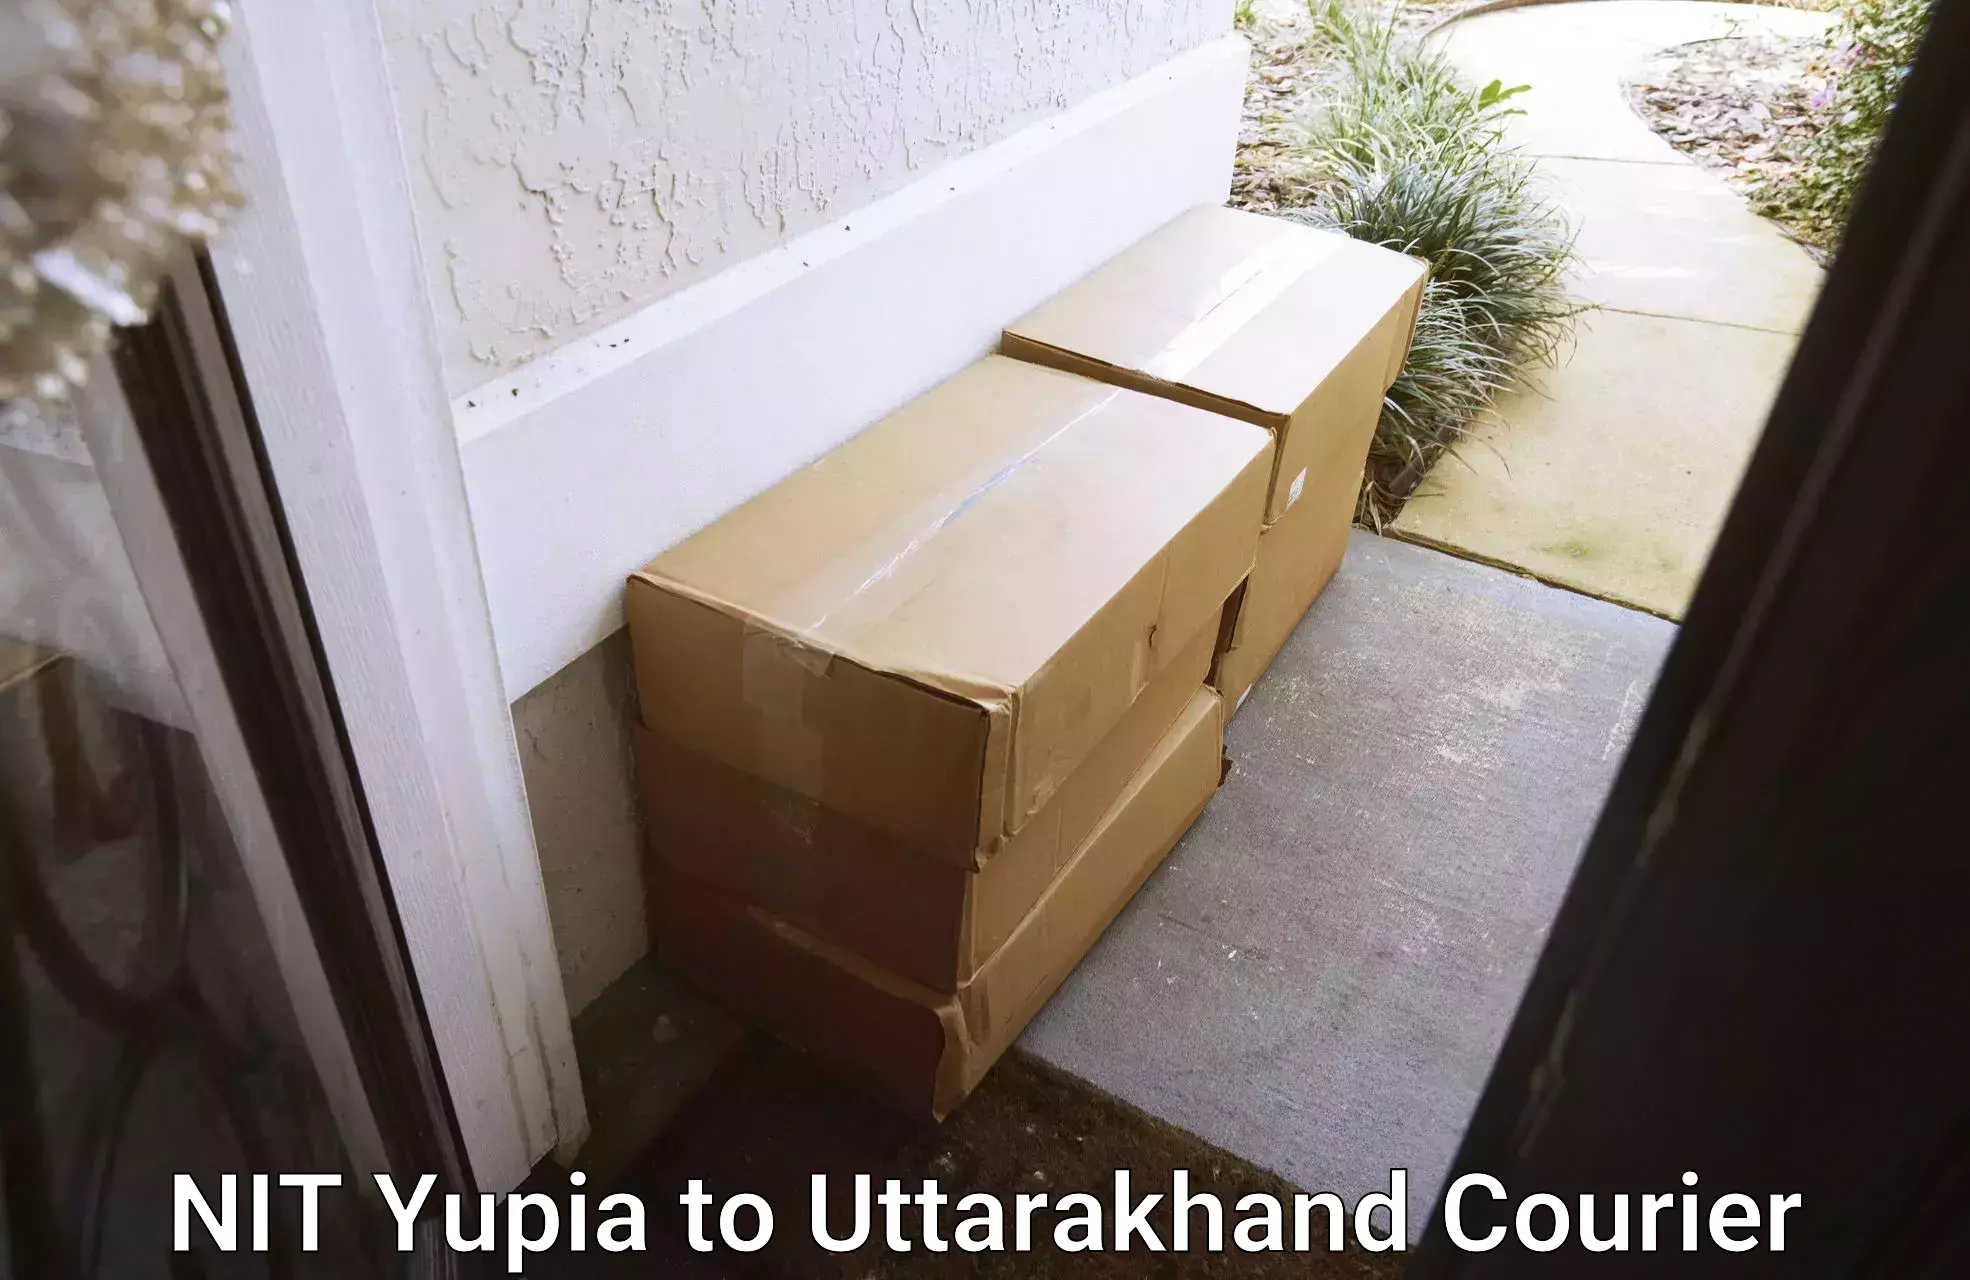 Fragile item shipping in NIT Yupia to Kotdwara